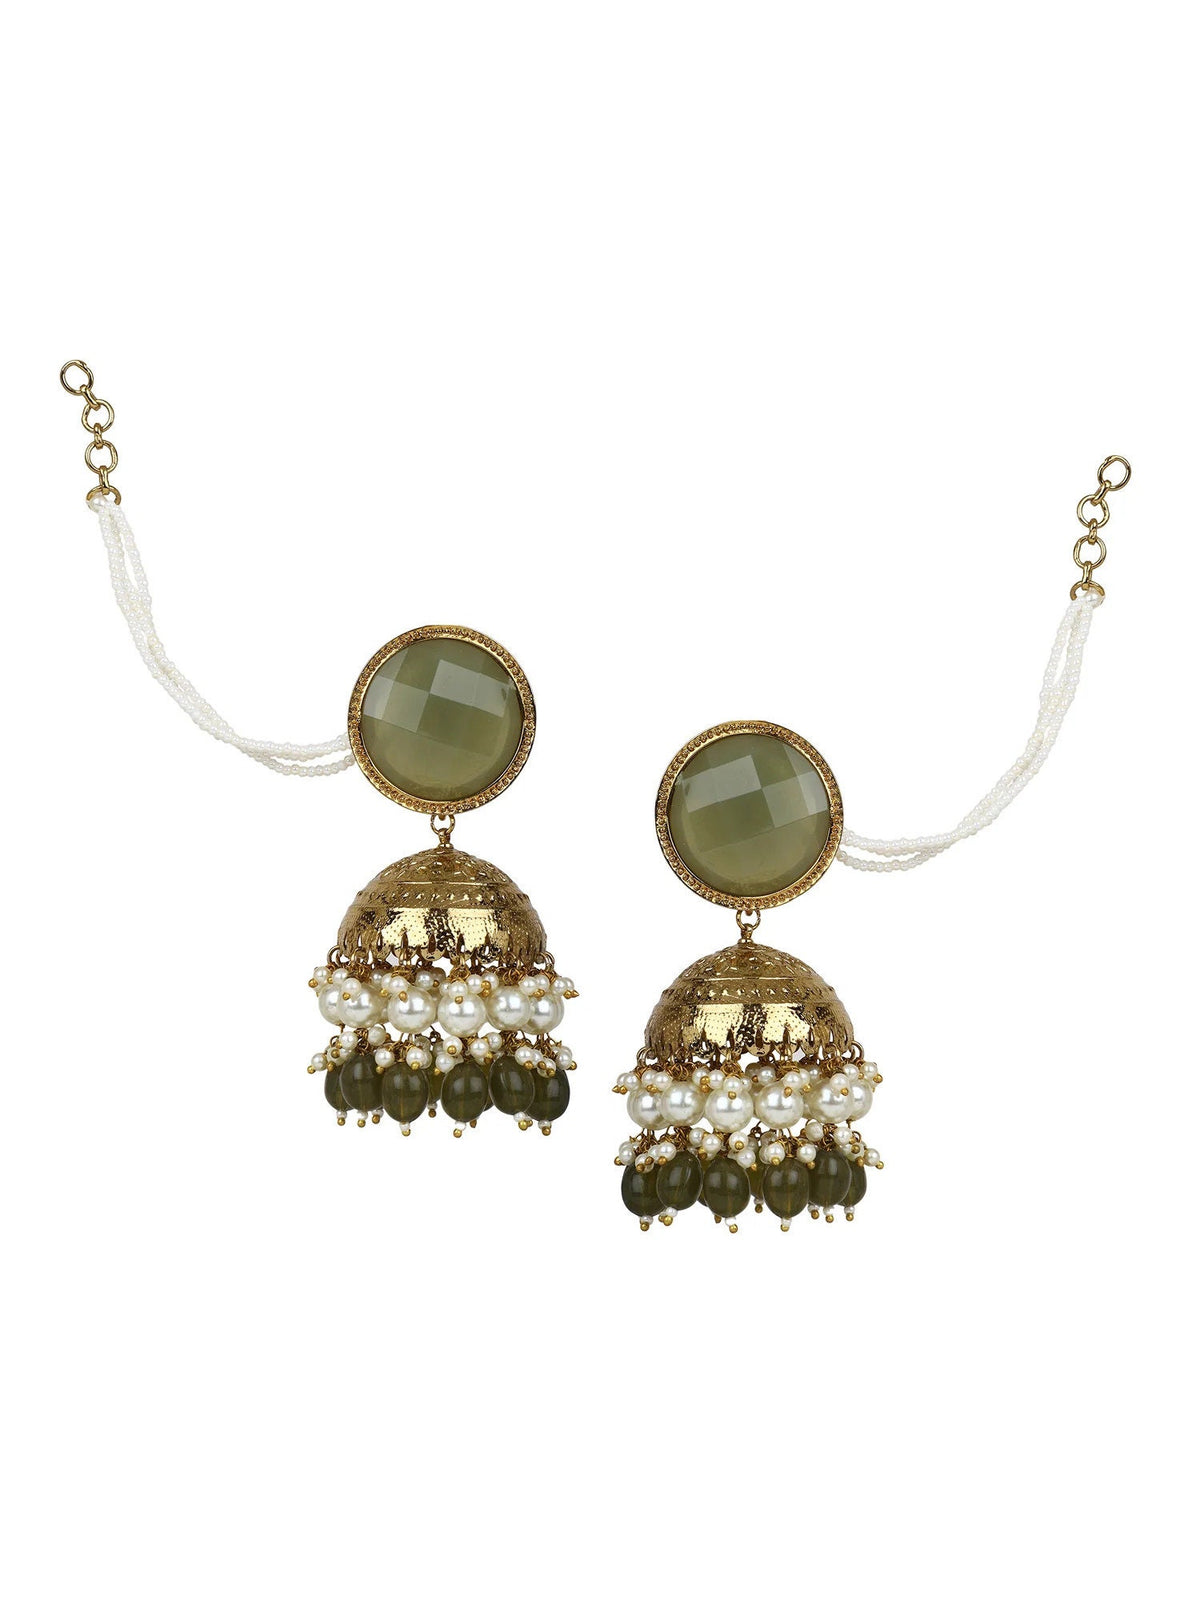 Kundan Jhumki earrings hanging beads earring, Maharani Kundan Meenakari Jhumki with moti hanging and hair chain